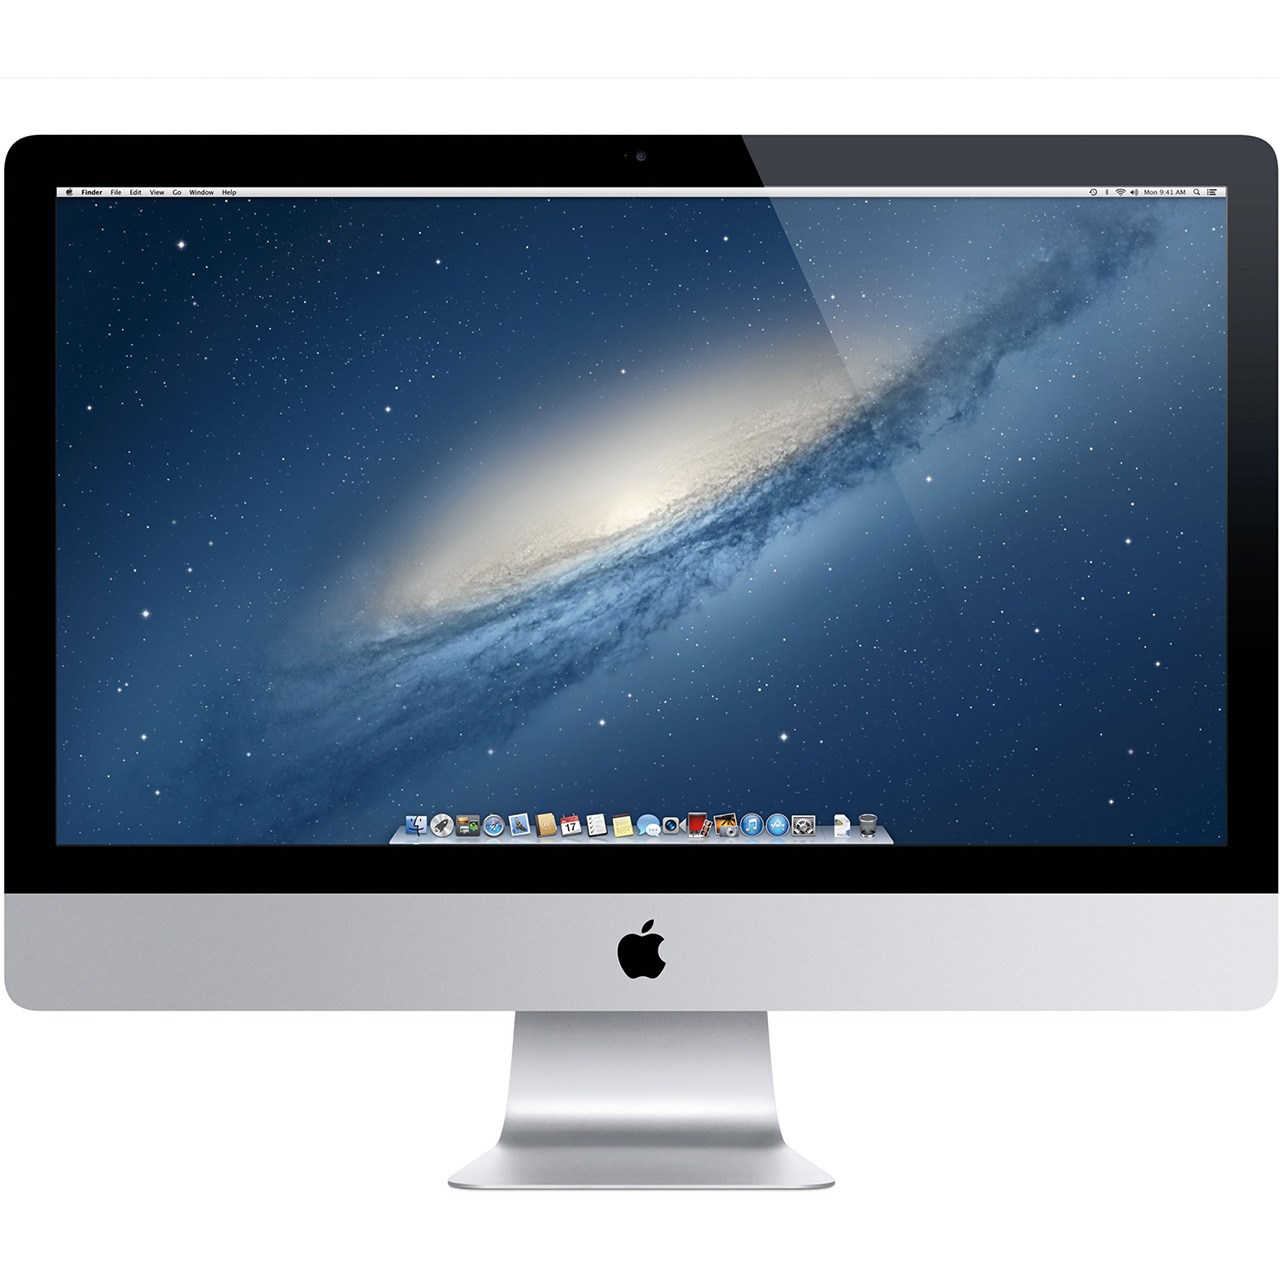 کامپیوتر همه کاره 21.5 اینچی اپل مدل iMac MK142 2015